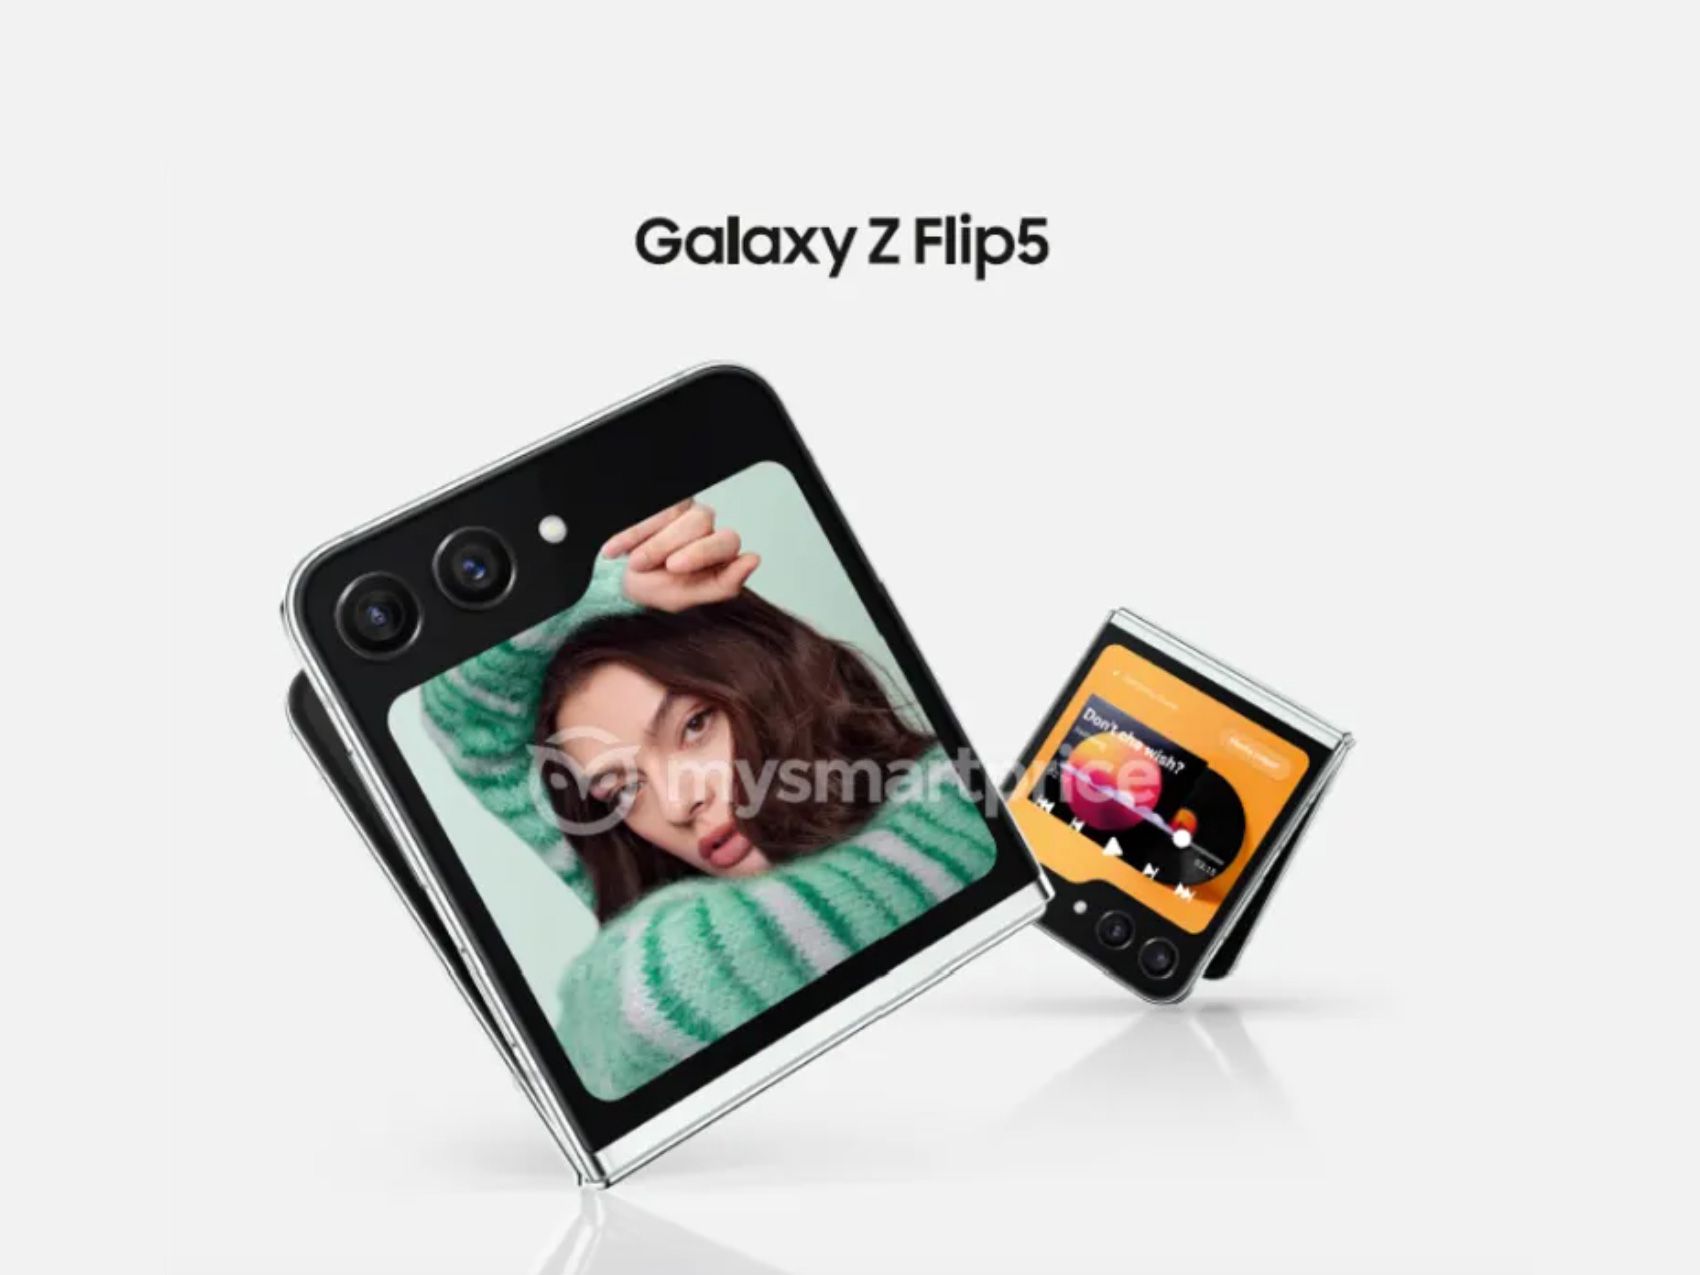 +20%: Samsung verhoogt mogelijk de prijs van de Galaxy Flip 5 clamshell aanzienlijk